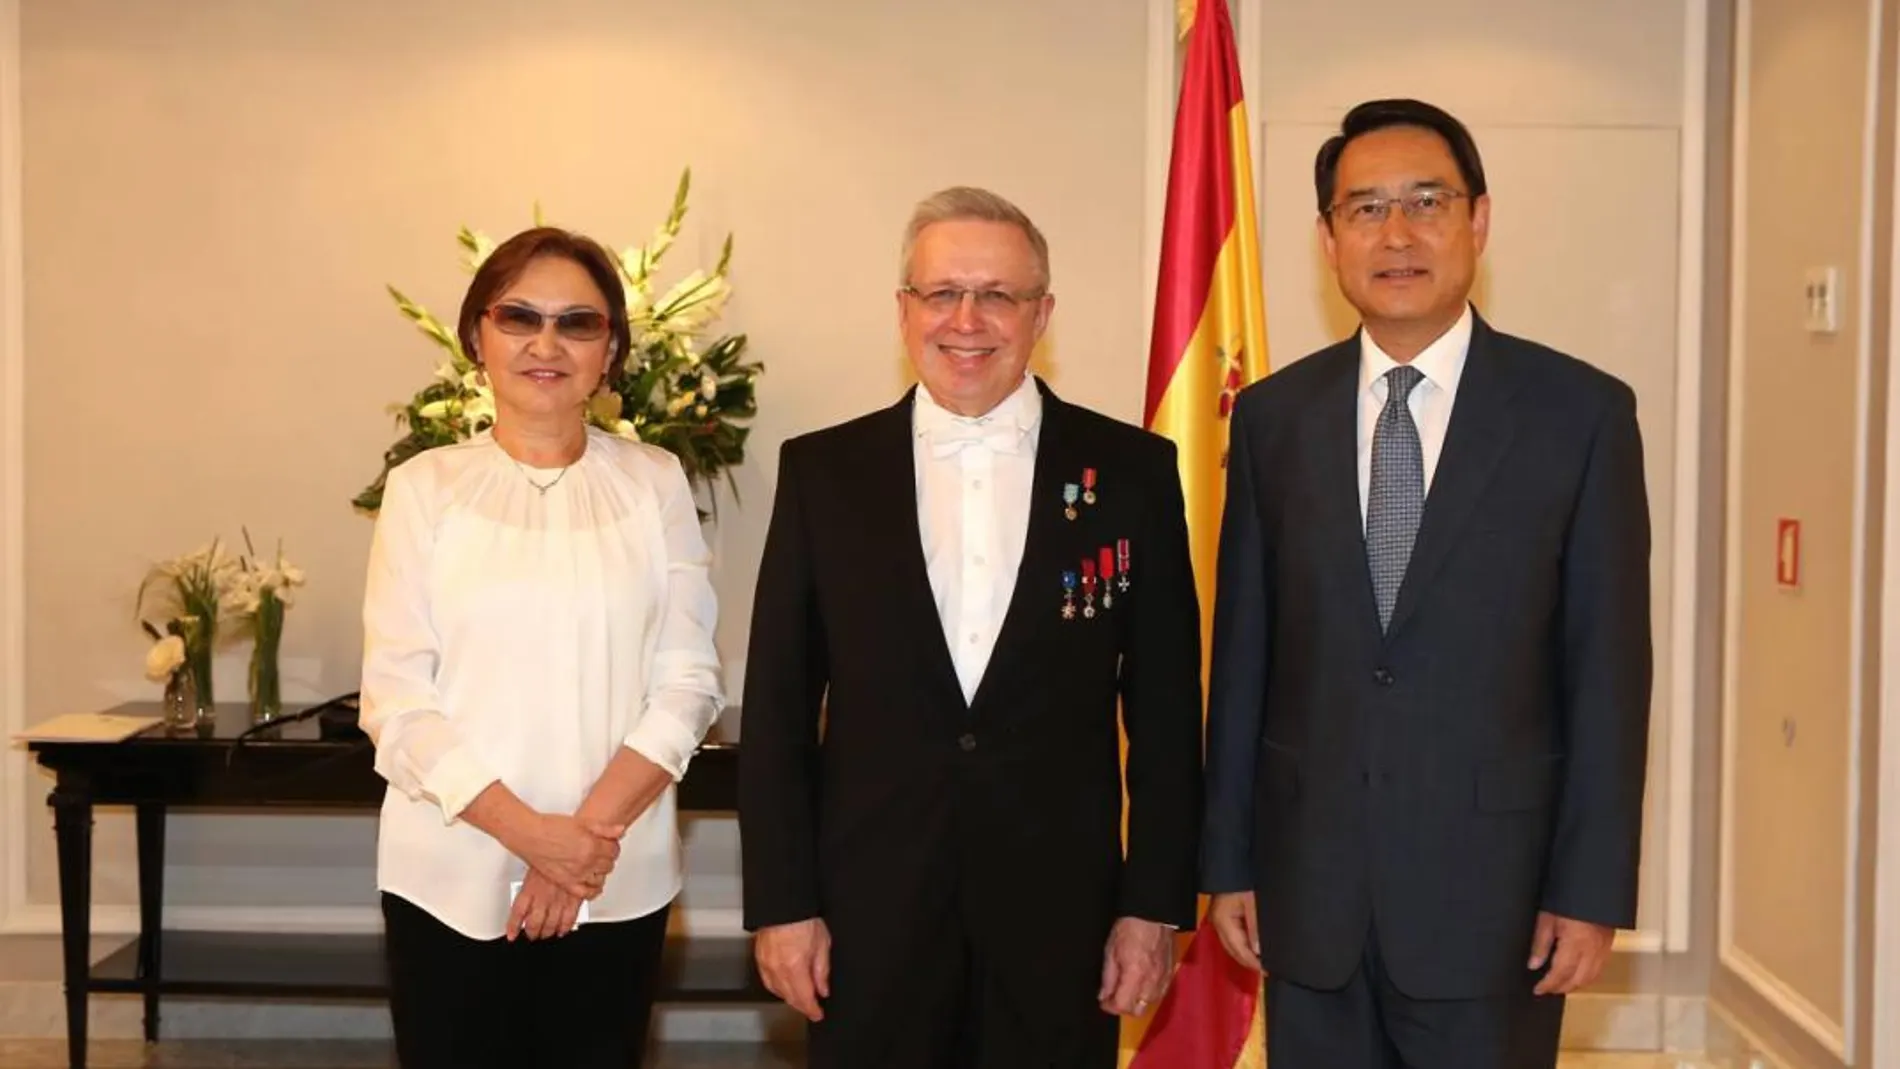 El anfitrión kazajo en la imagen (centro) acompañado de su señora Zhigalov y el embajador de China Lyu Fan / Foto: Cristina Bejarano